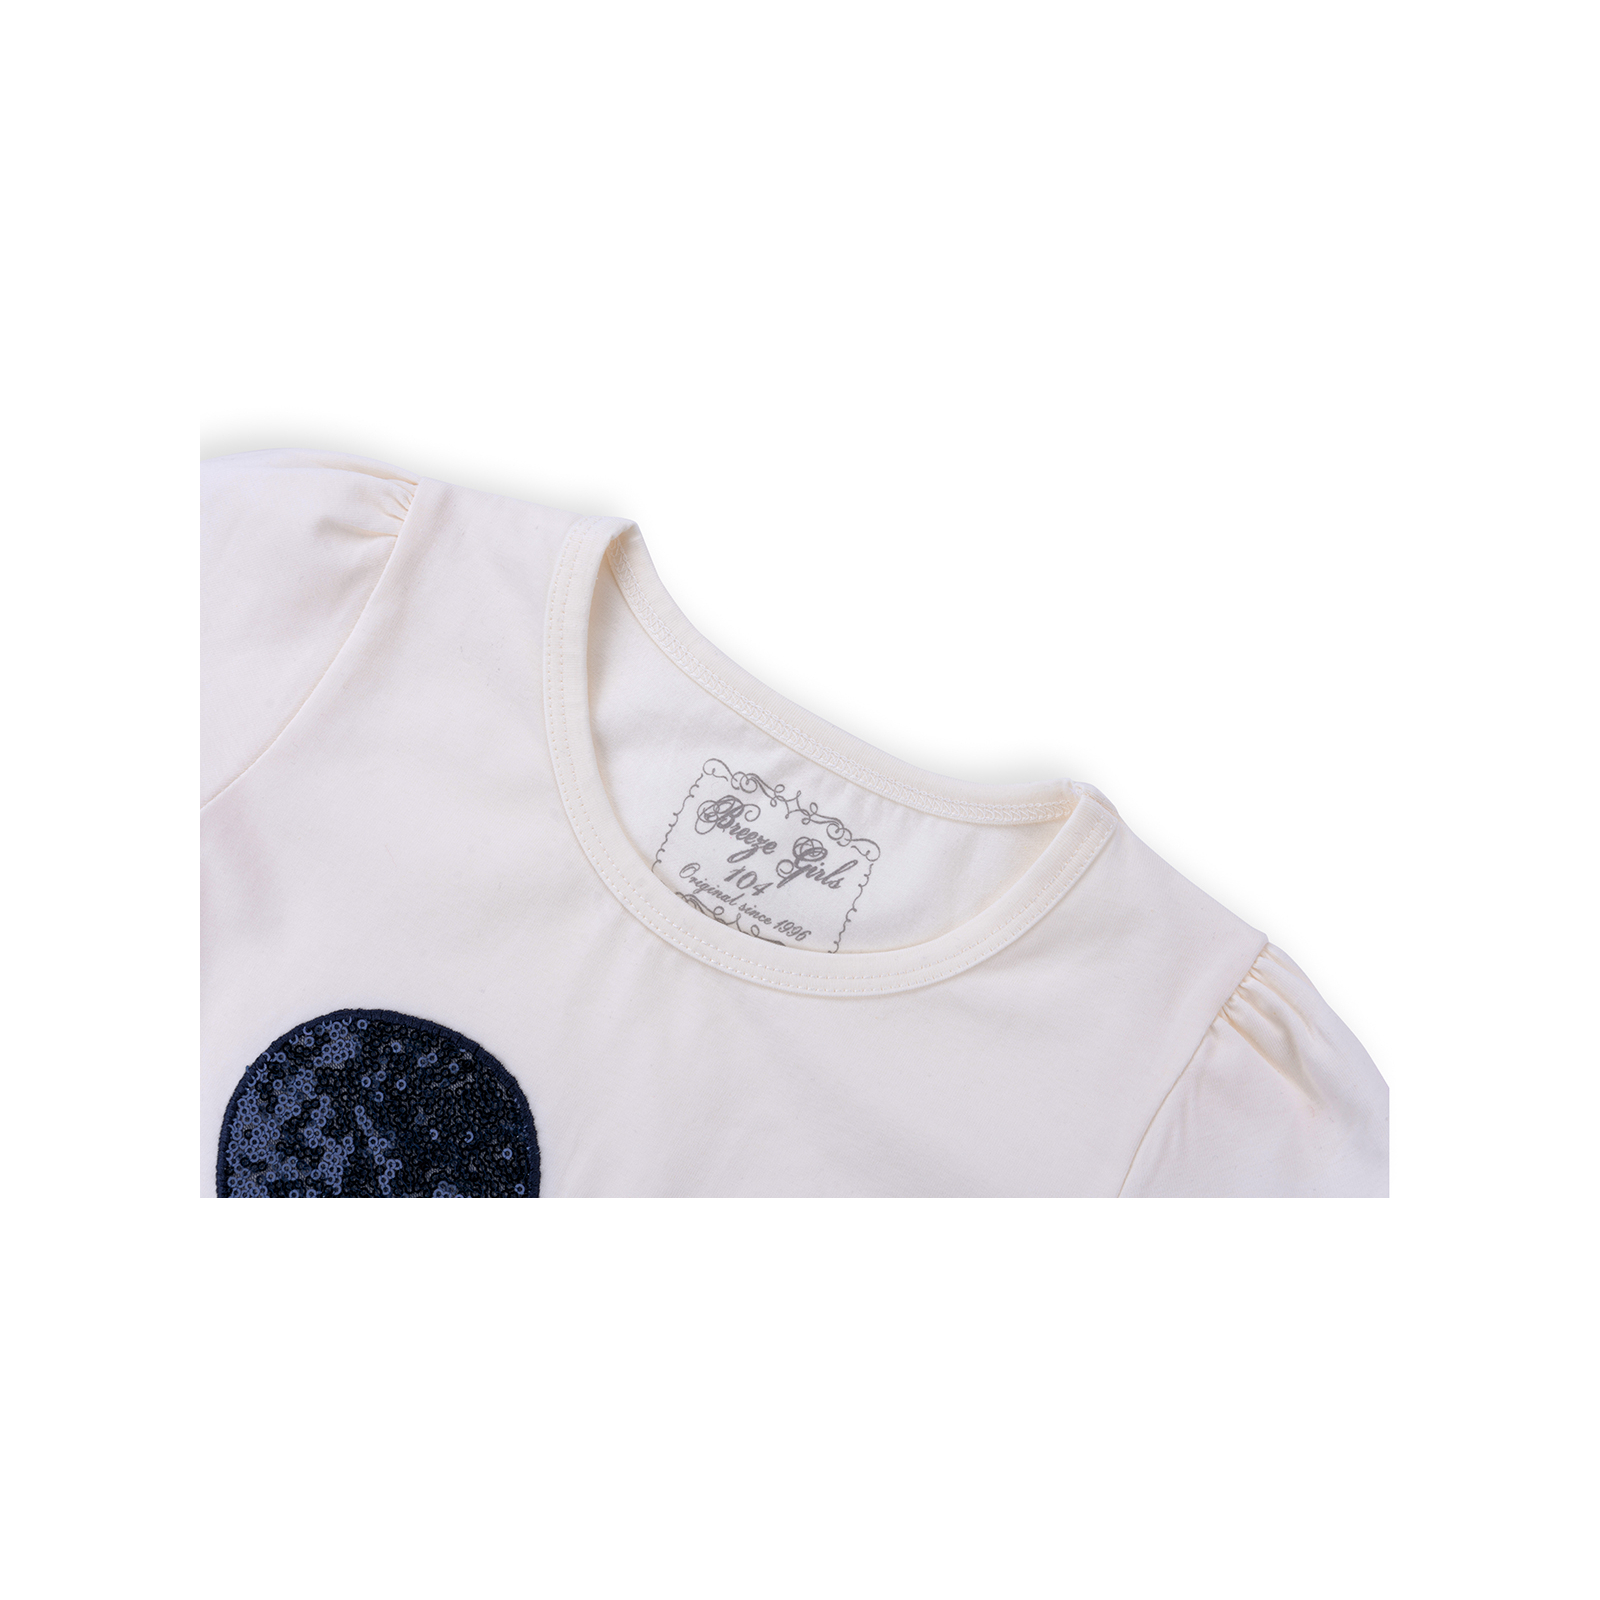 Набор детской одежды Breeze футболка с бабочкой со штанишками (8969-116G-cream) изображение 4